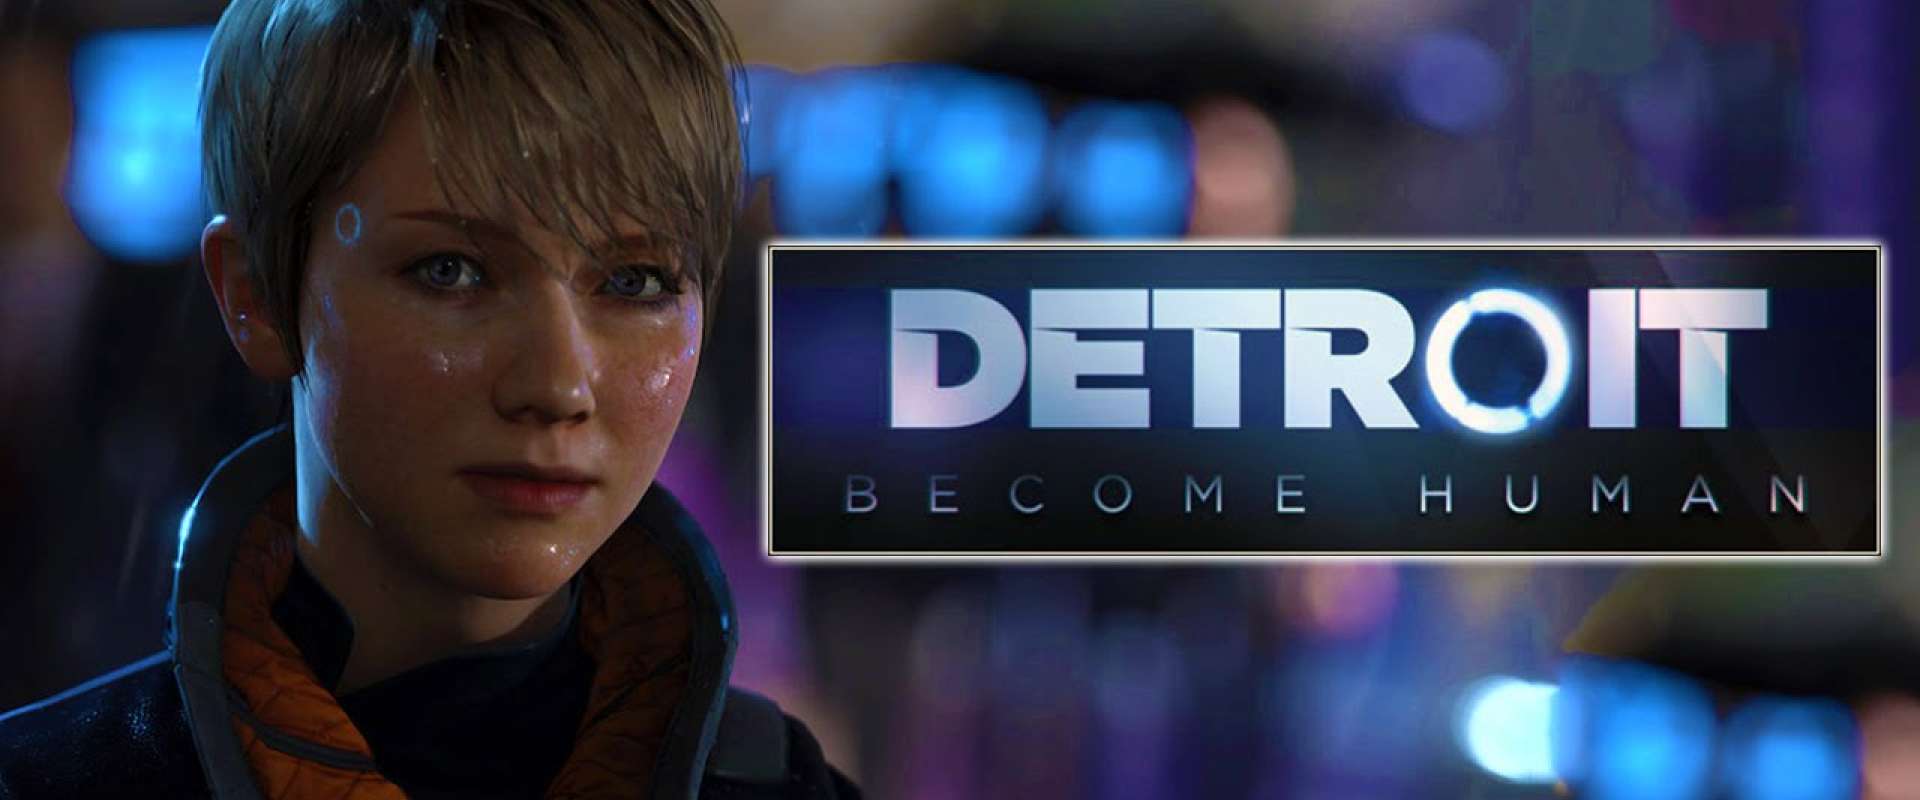 Requisitos mínimos para rodar Detroit: Become Human no PC